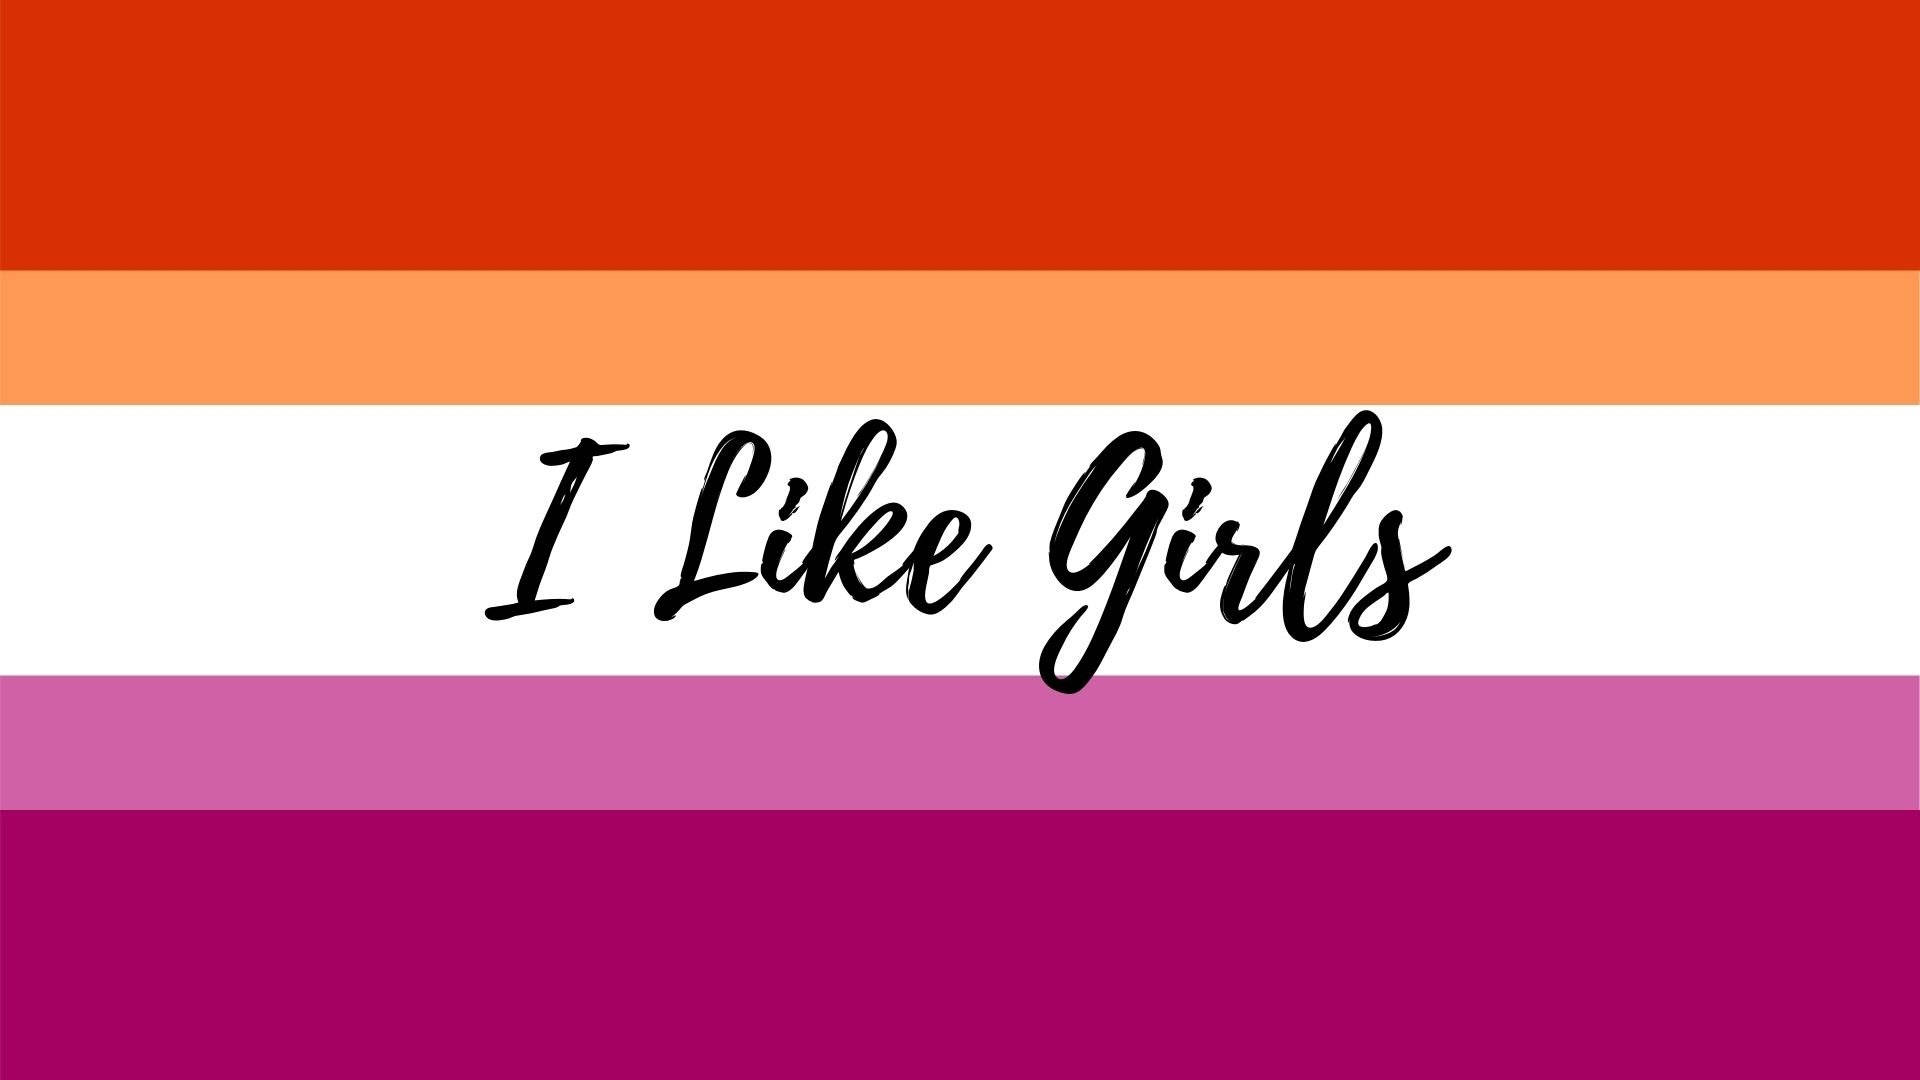 I Like Girls Lesbian Flag Wallpaper